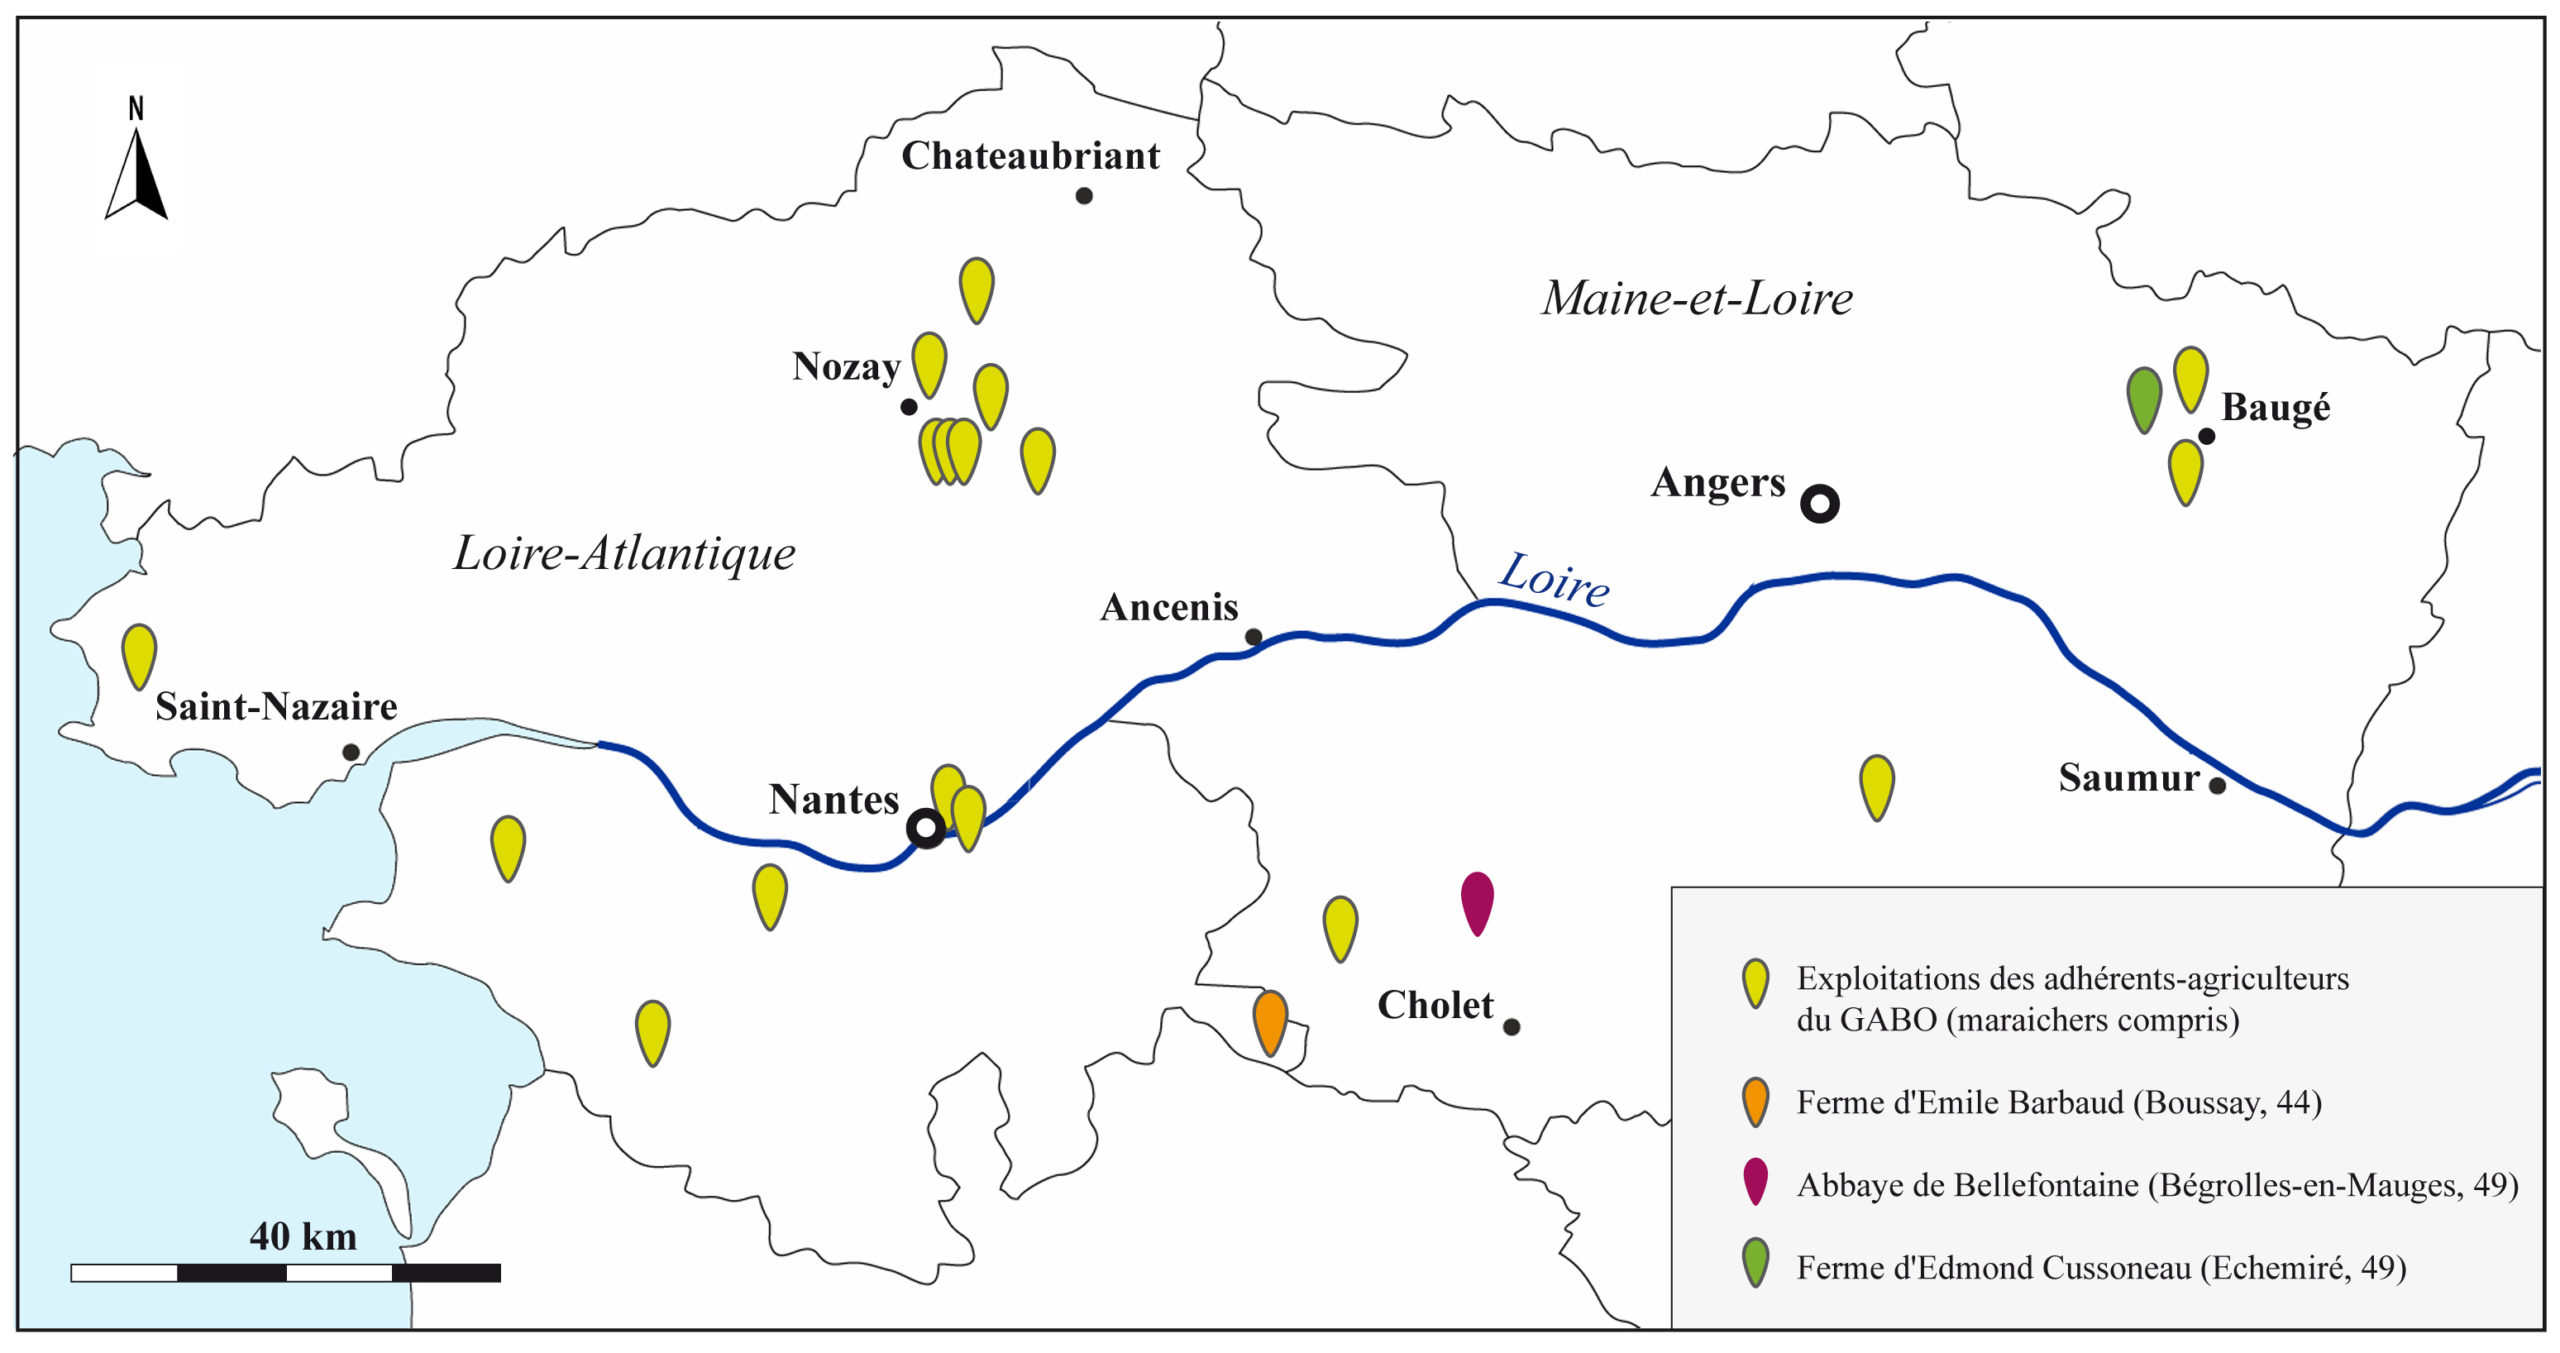 Localisation des fermes des adhérents-agriculteurs du GABO localisés en Loire-Atlantique et Maine-et-Loire, d’après la liste du 25 juillet 1959